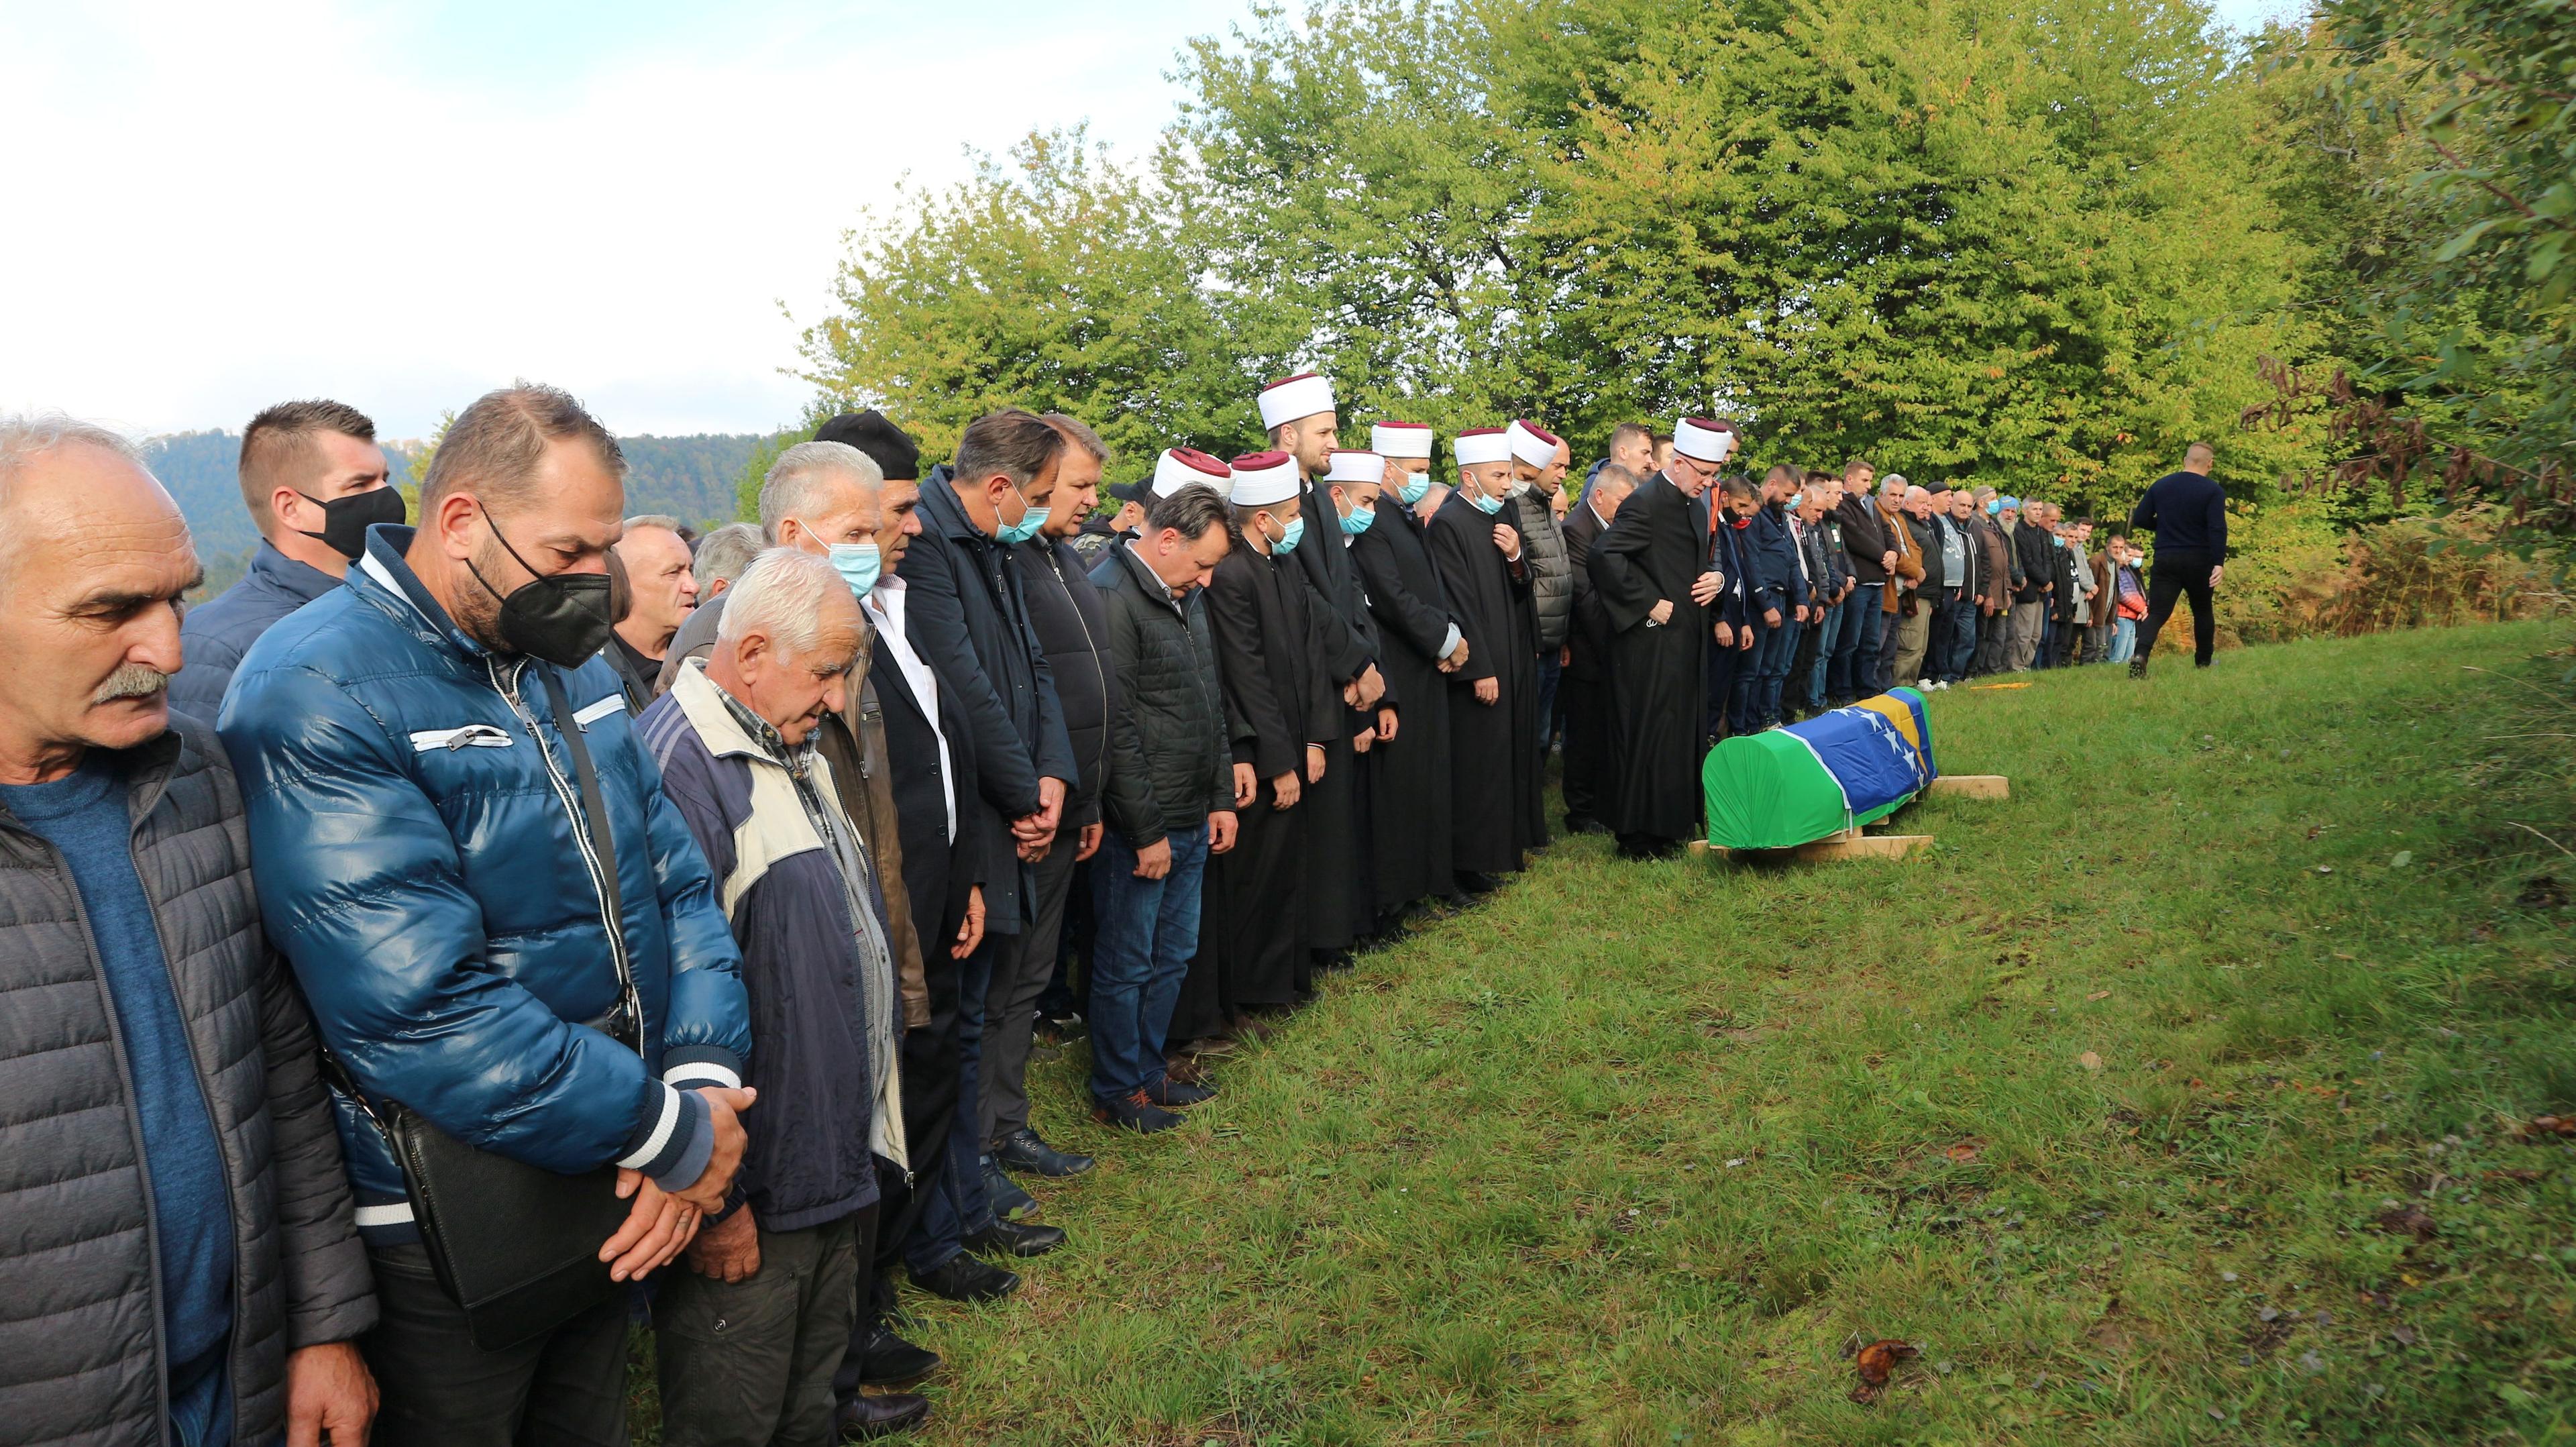 kao i brojni Srebreničani, i rahmetli Zulfo je 1995. bježao kroz šume da bi spasio živu glavu - Avaz